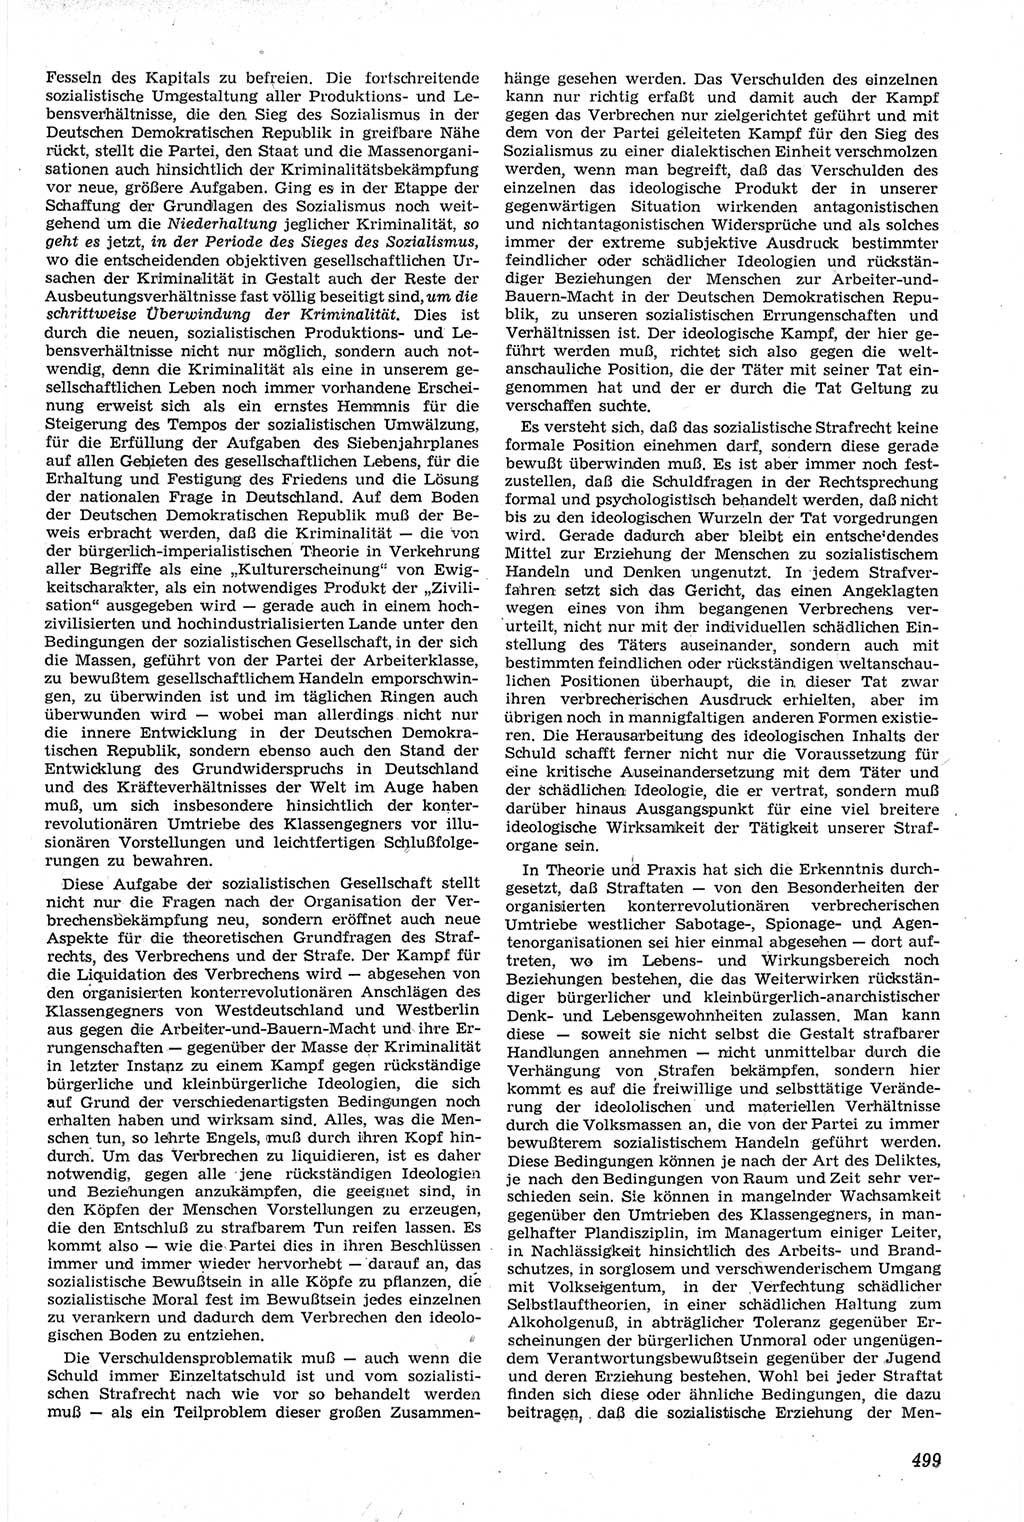 Neue Justiz (NJ), Zeitschrift für Recht und Rechtswissenschaft [Deutsche Demokratische Republik (DDR)], 14. Jahrgang 1960, Seite 499 (NJ DDR 1960, S. 499)